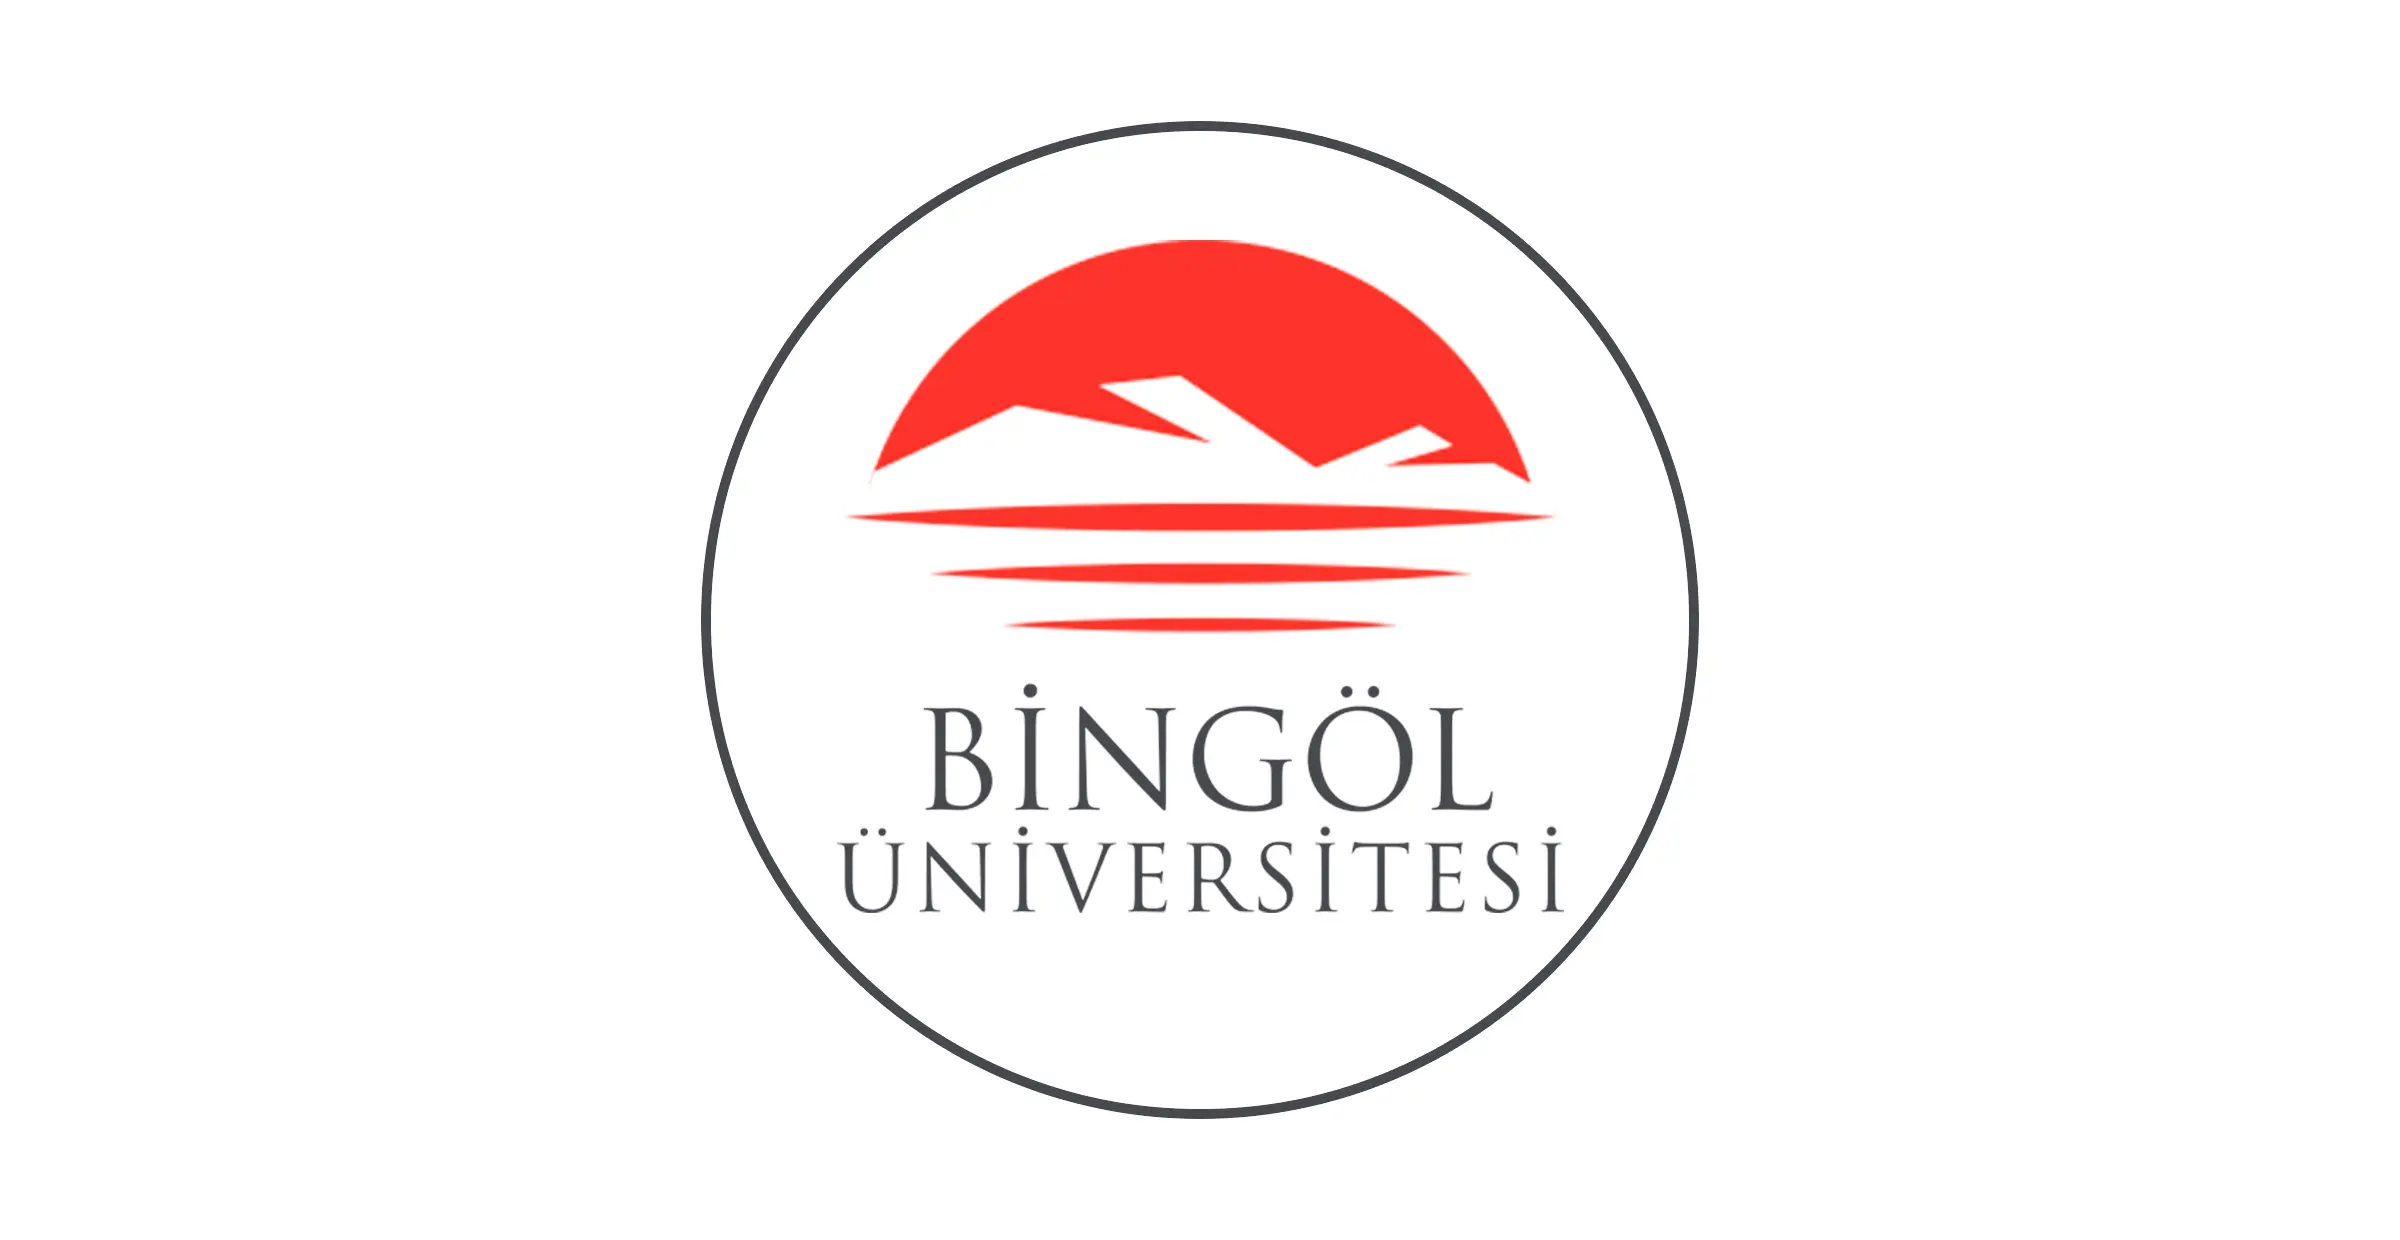 جامعة بينغول هي جامعة تأسست عام 2017 في عام تأسيسها ، بدأت الدراسة في جامعة بينغول بكلية الآداب والعلوم وكلية الاقتصاد والعلوم الإدارية